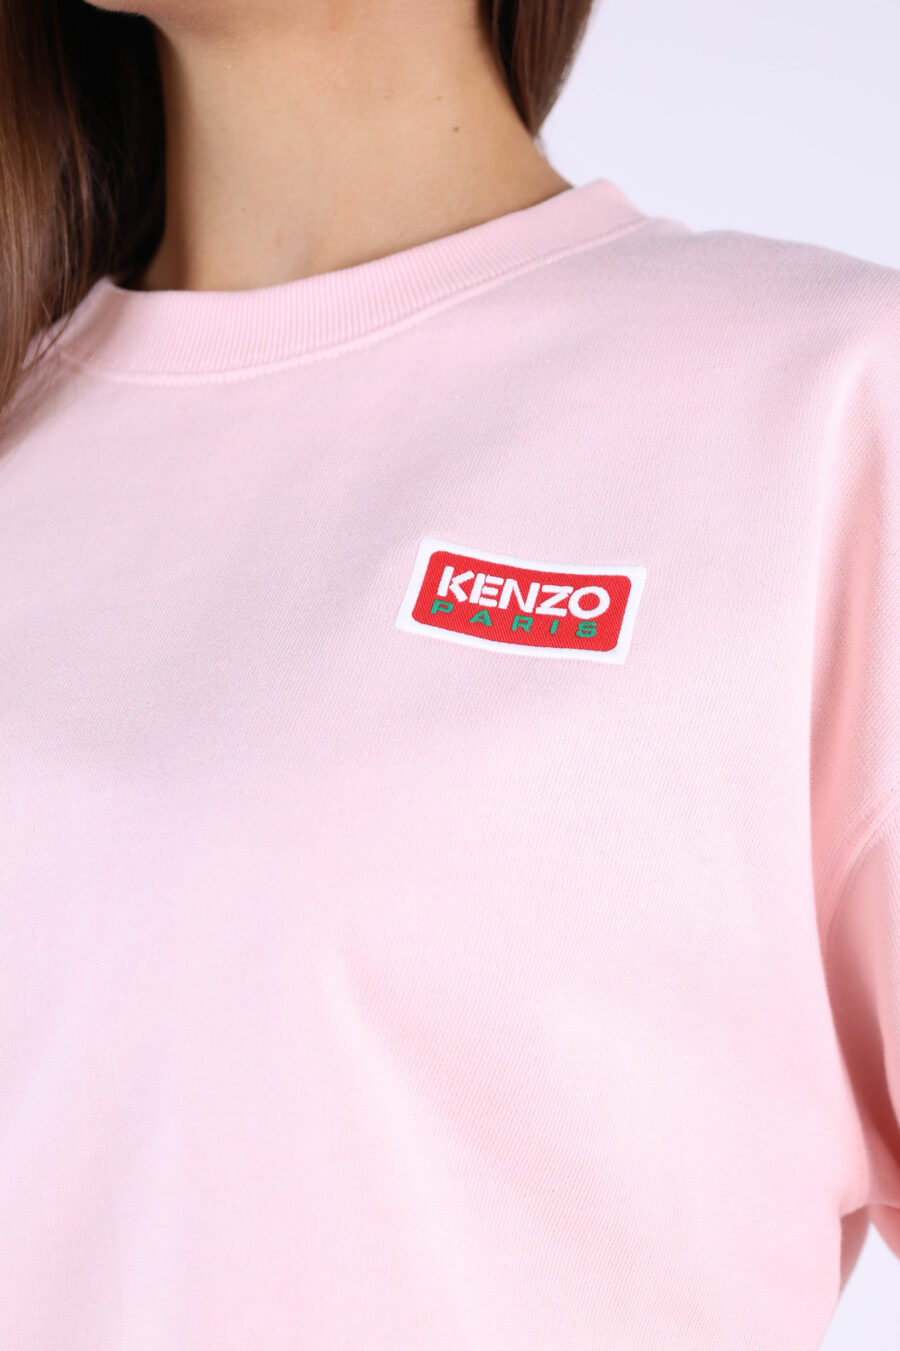 Camisola cor-de-rosa com maxilogo "kenzo paris" nas costas - 361223054662201683